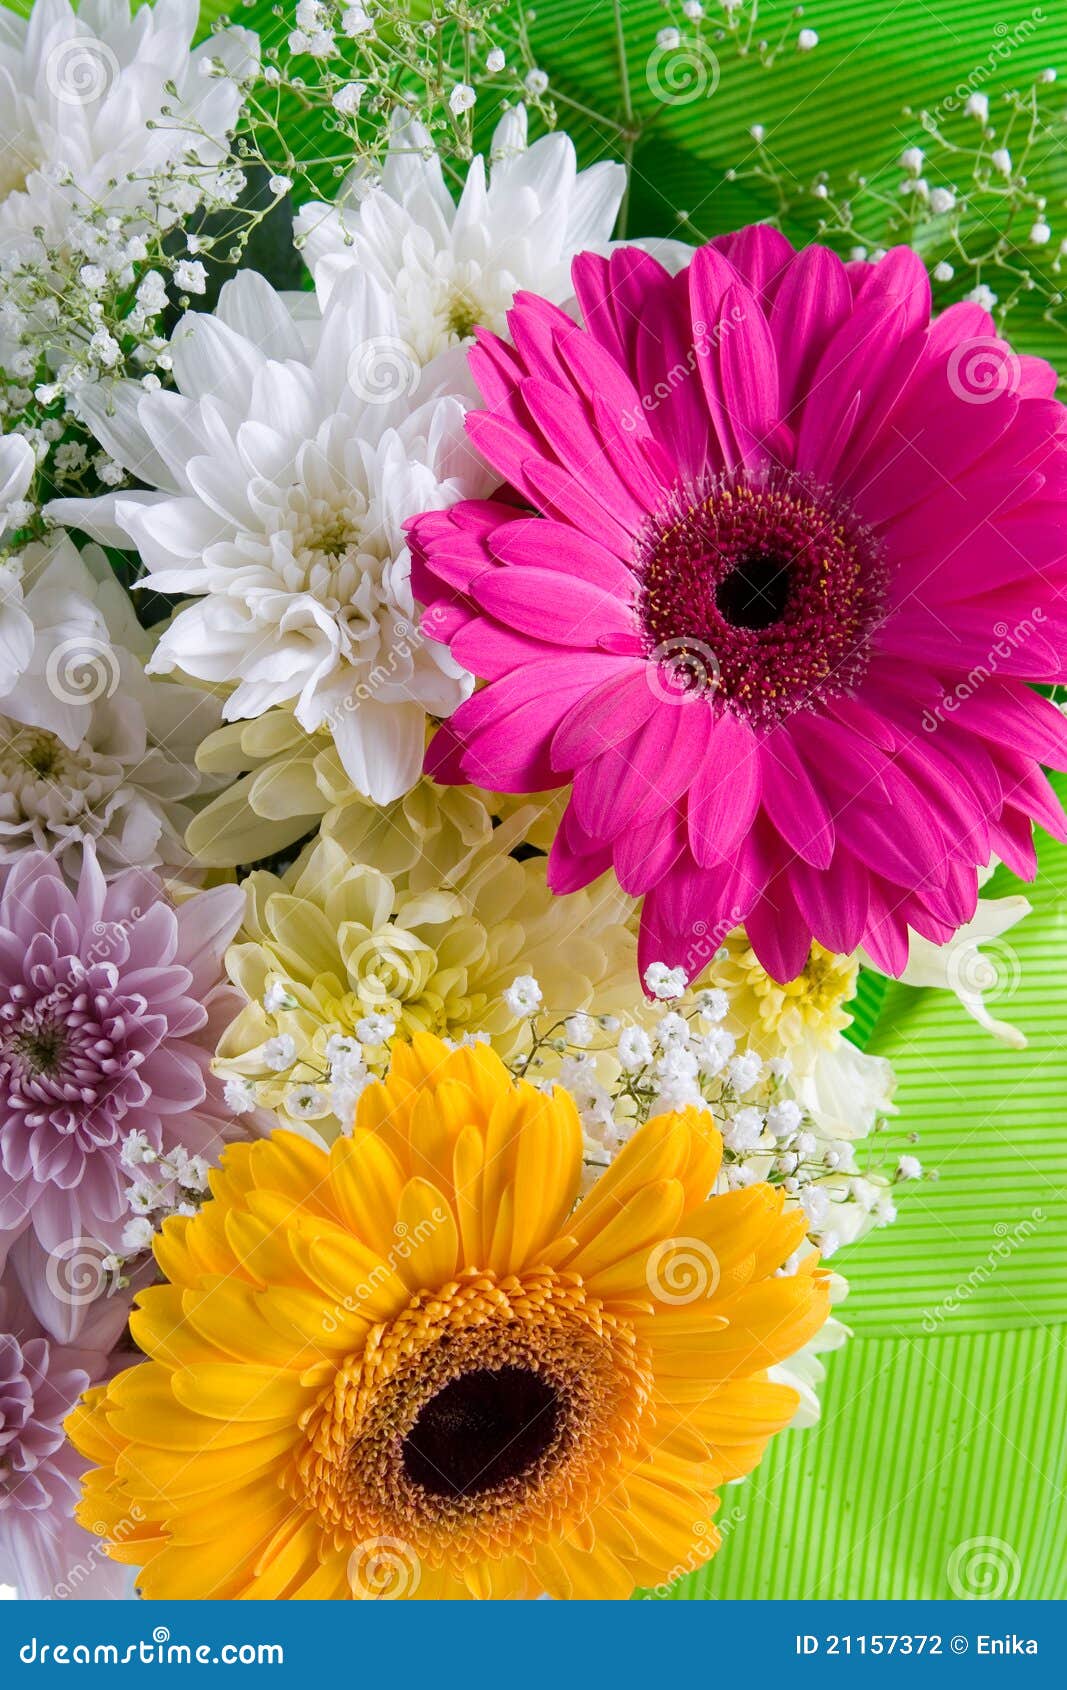 https://thumbs.dreamstime.com/z/bouquet-beautiful-flowers-21157372.jpg